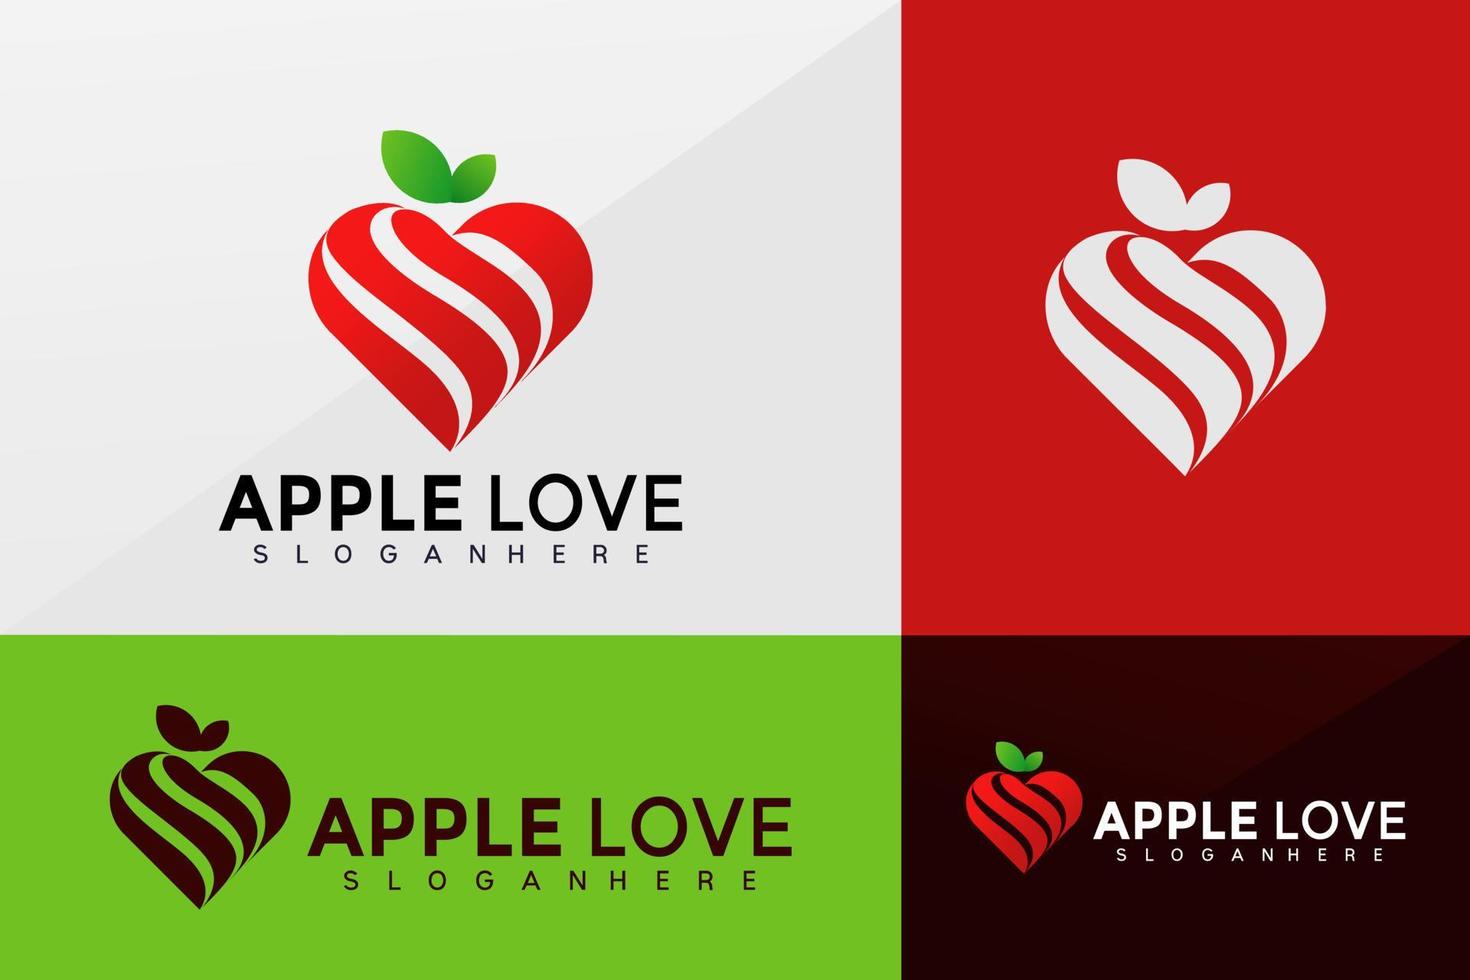 vetor de logotipo de amor da apple, design de logotipos de identidade de marca, logotipo moderno, modelos de ilustração vetorial de designs de logotipo